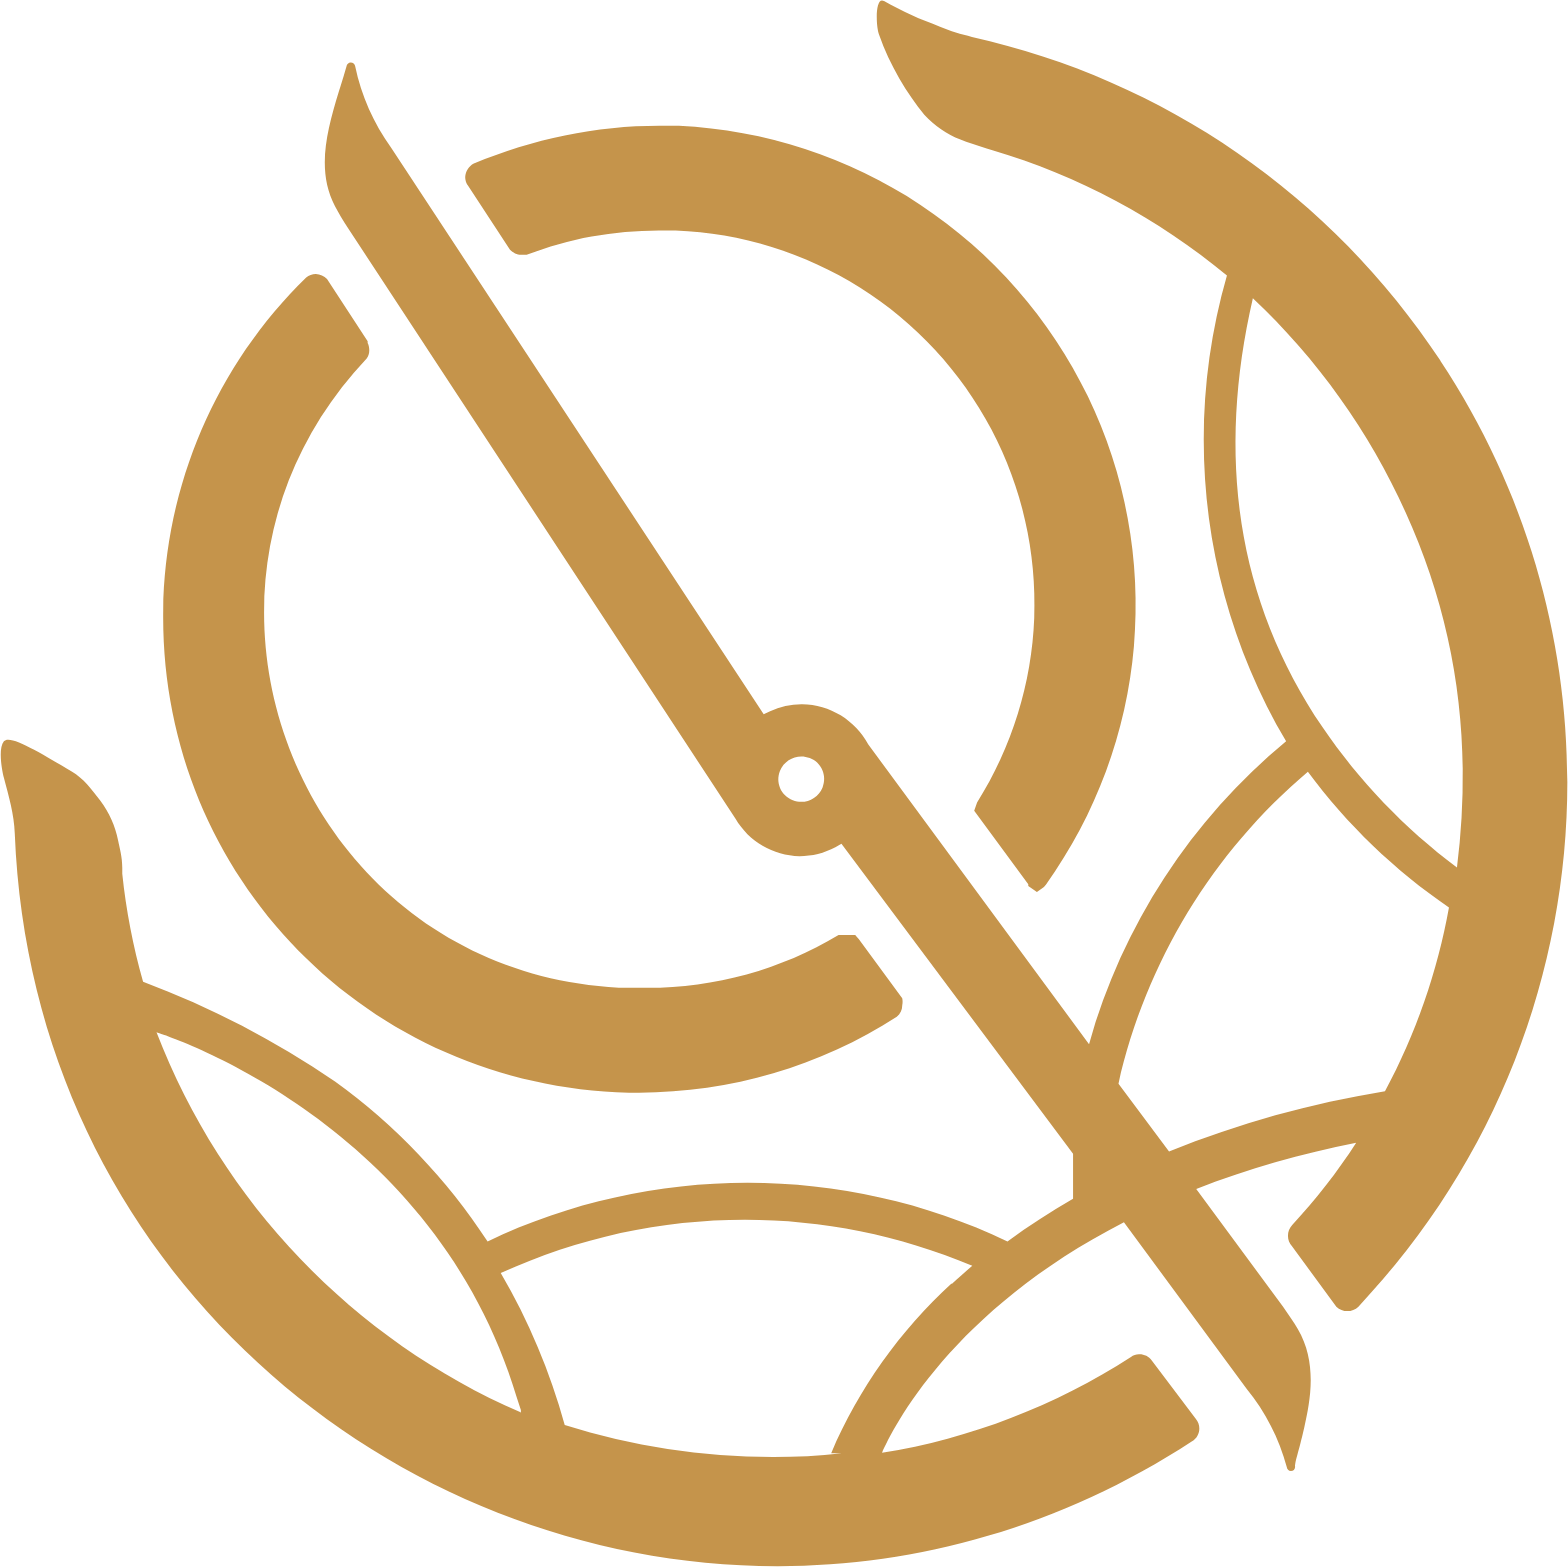 Boursa Kuwait Securities Company logo (PNG transparent)